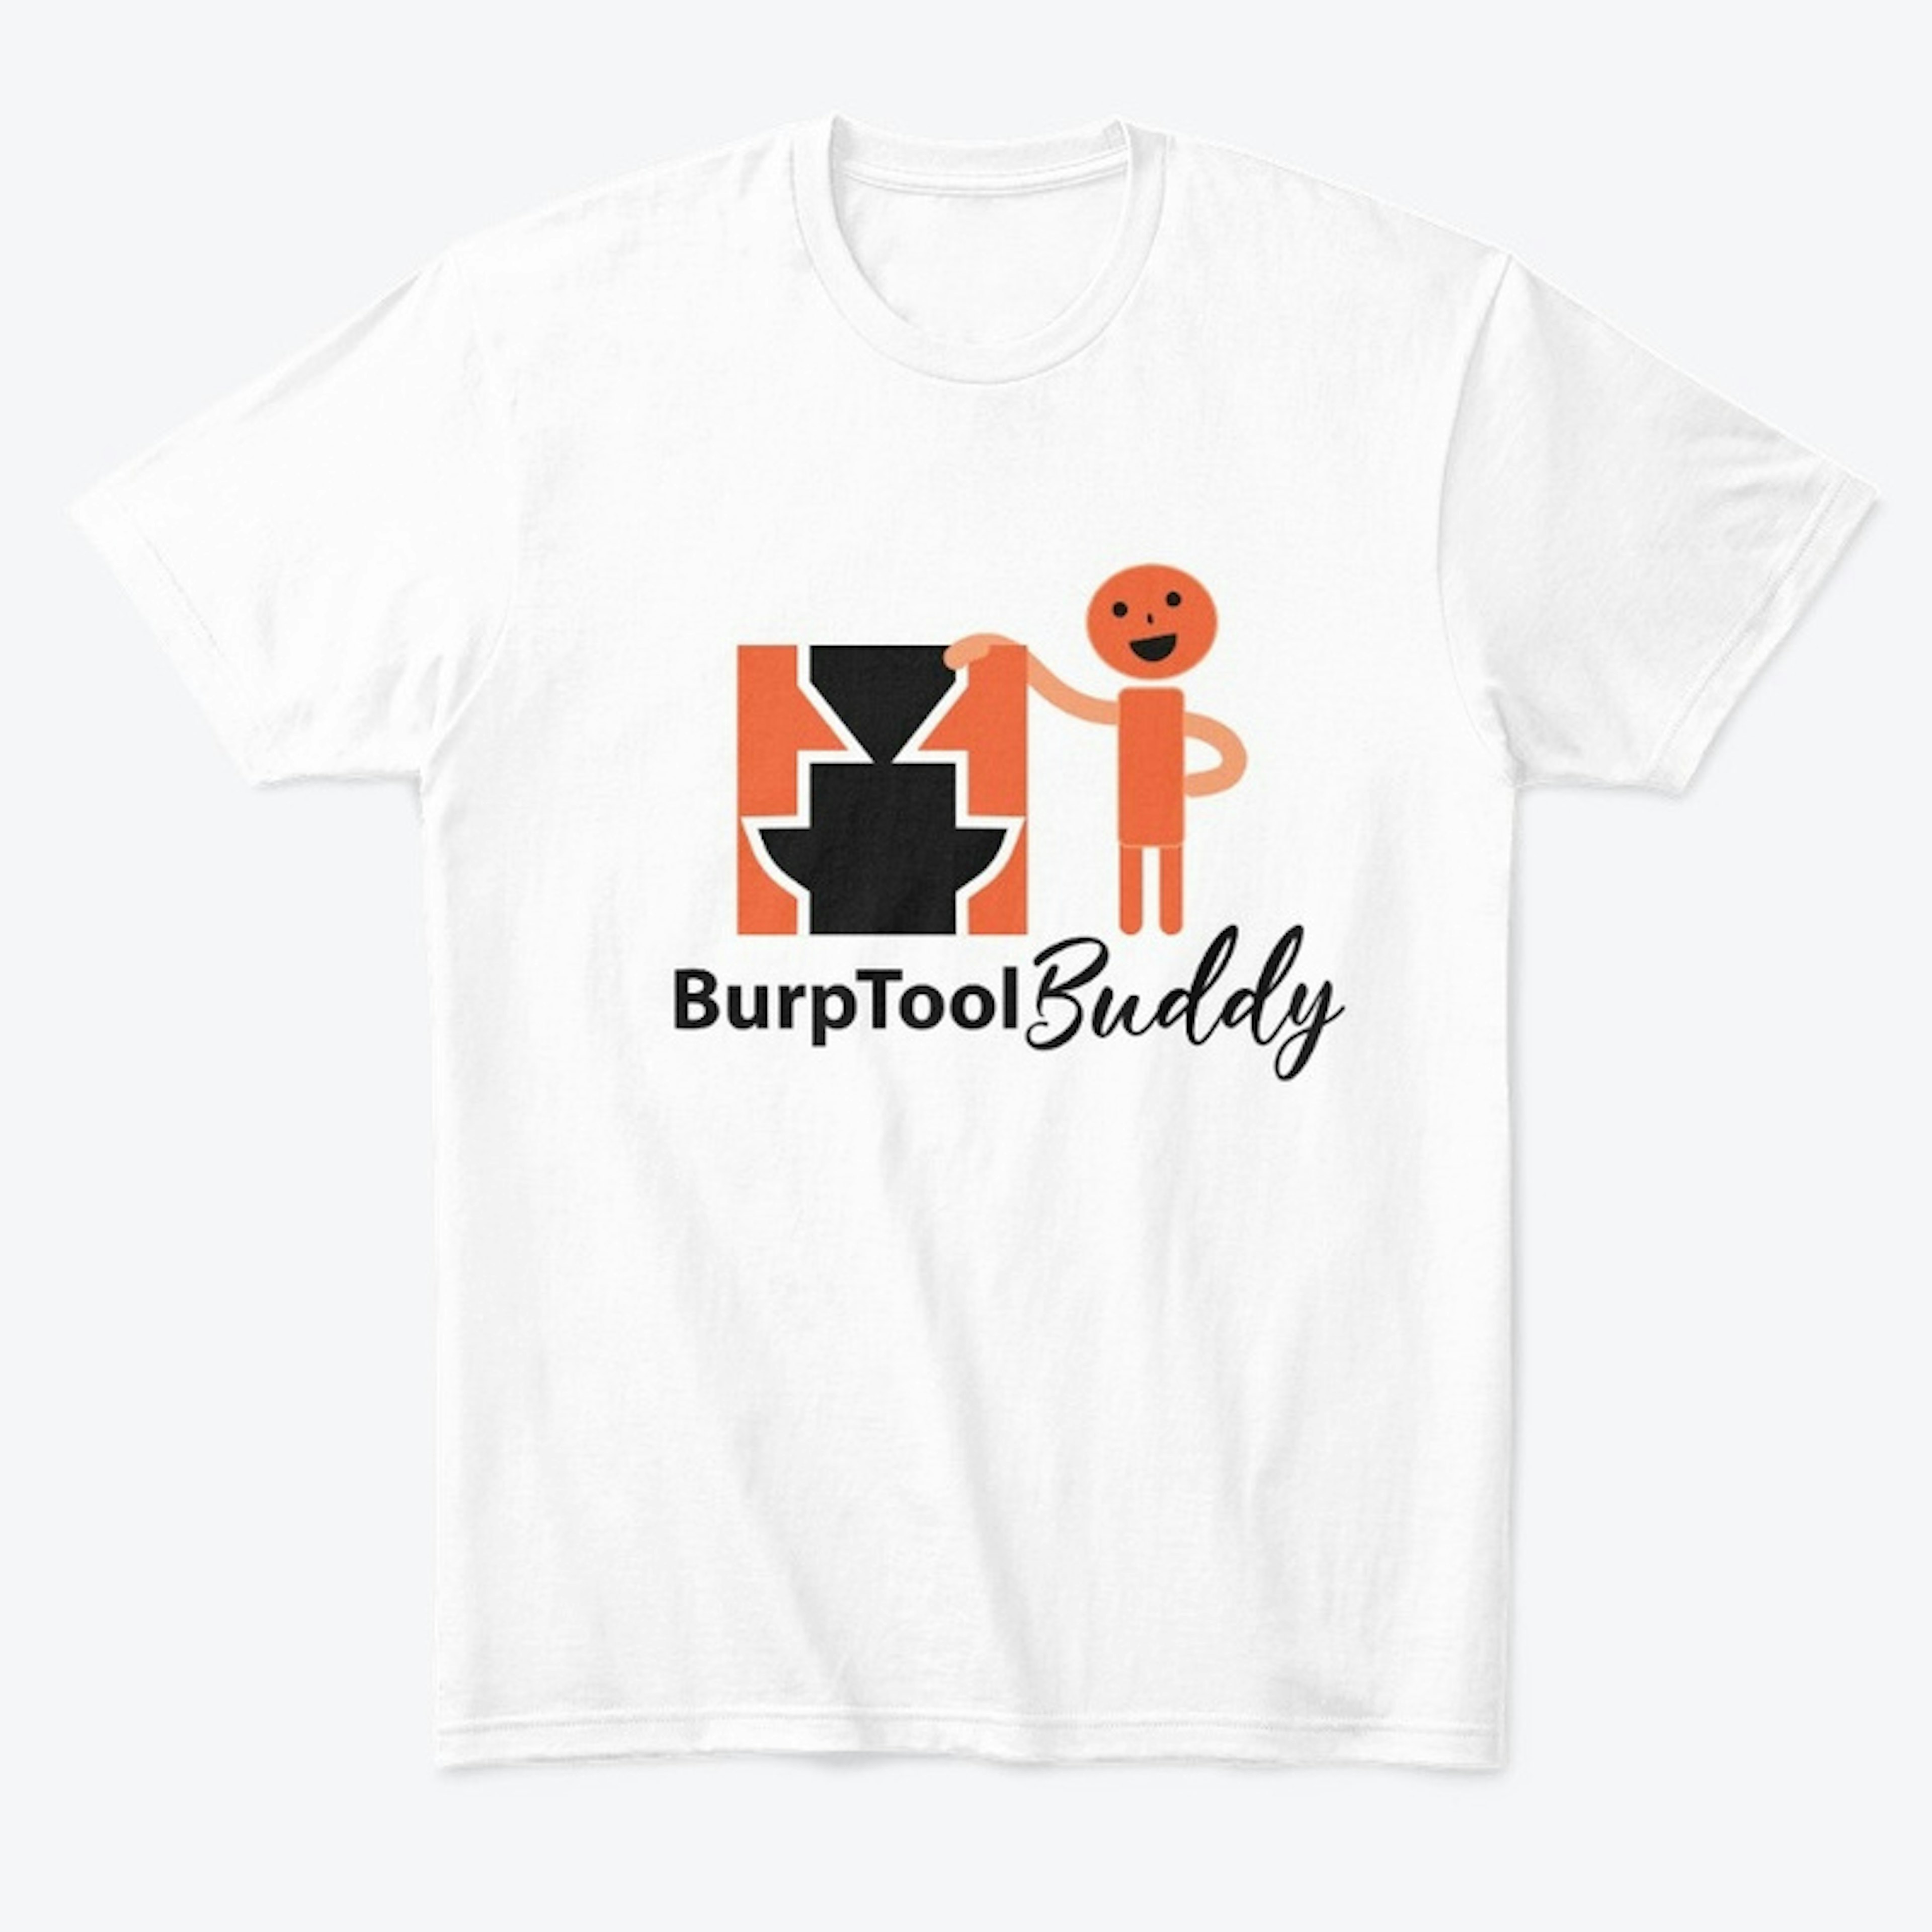 Burp Tool Buddy